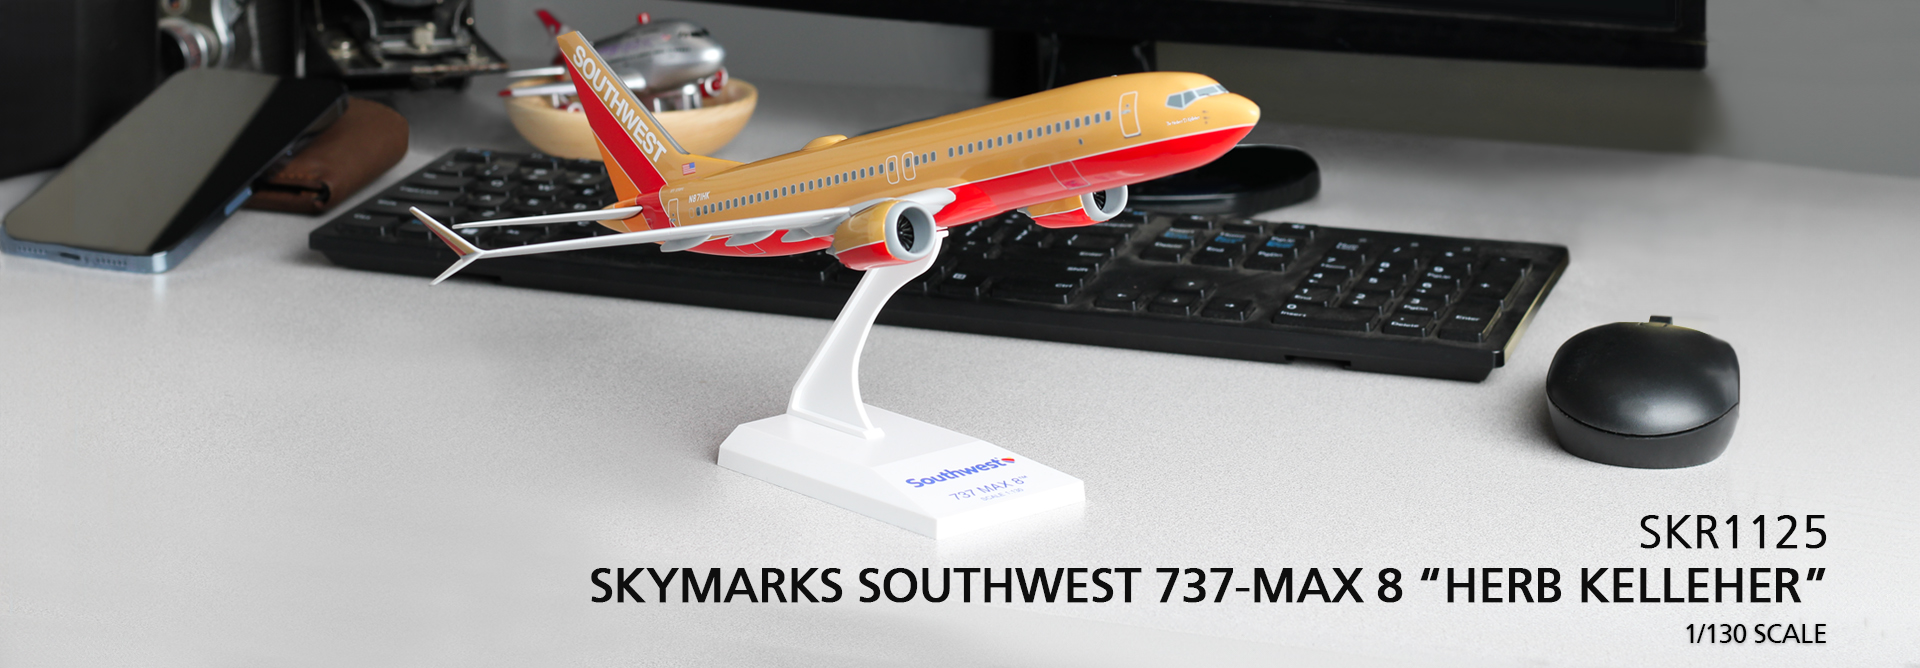 SKR1125 SKYMARKS SOUTHWEST 737 MAX 8 